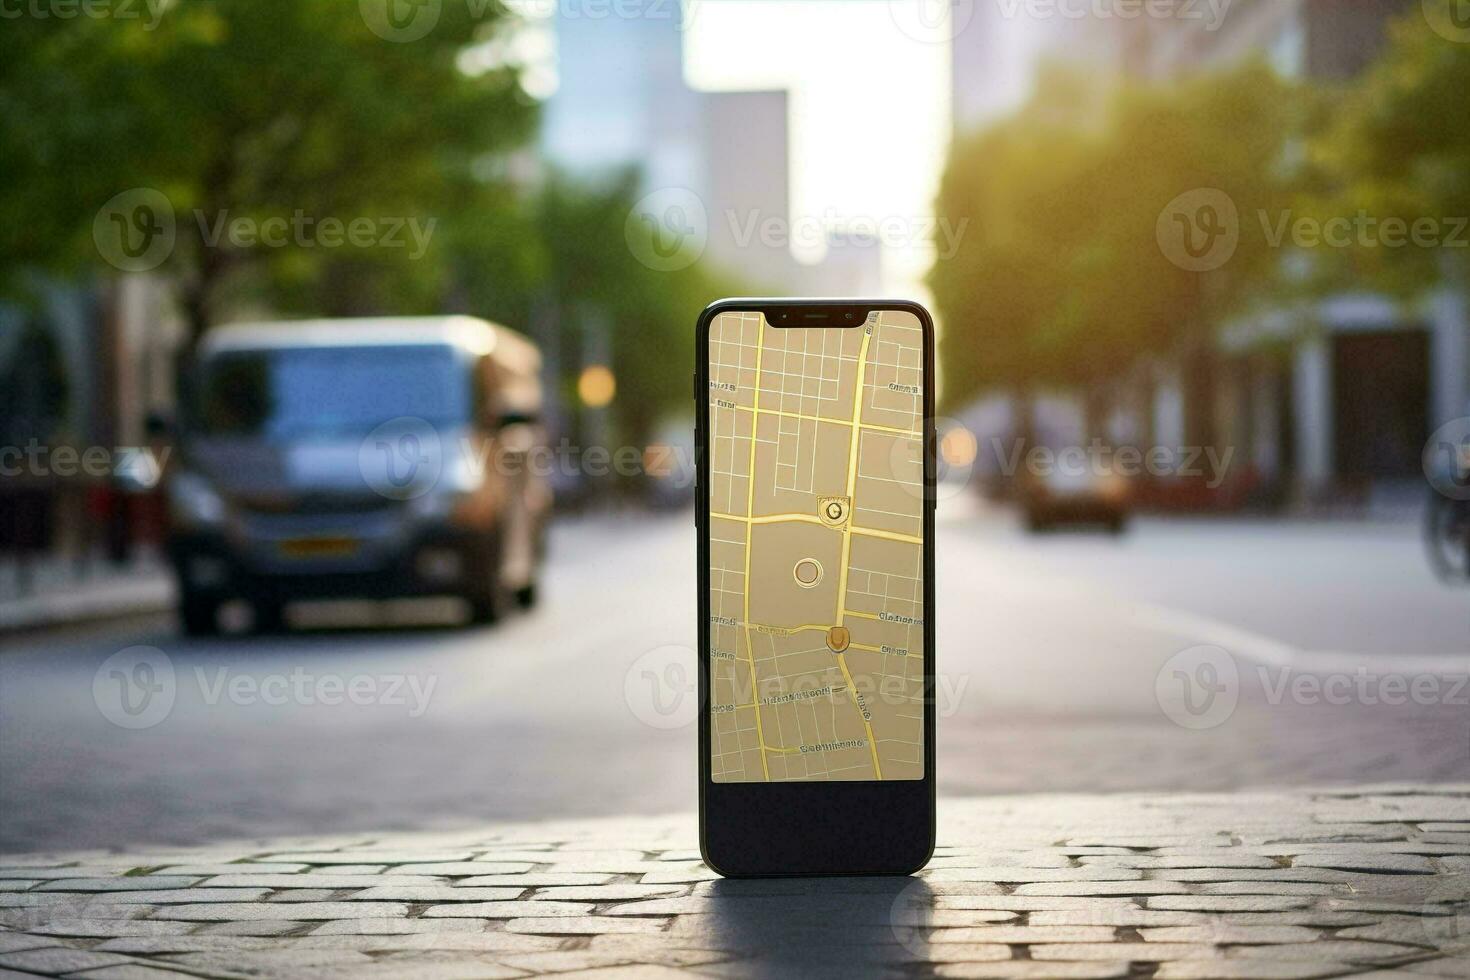 mano GPS la carretera teléfono mapa dirección calle marcador teléfono inteligente ubicación navegación ciudad solicitud foto